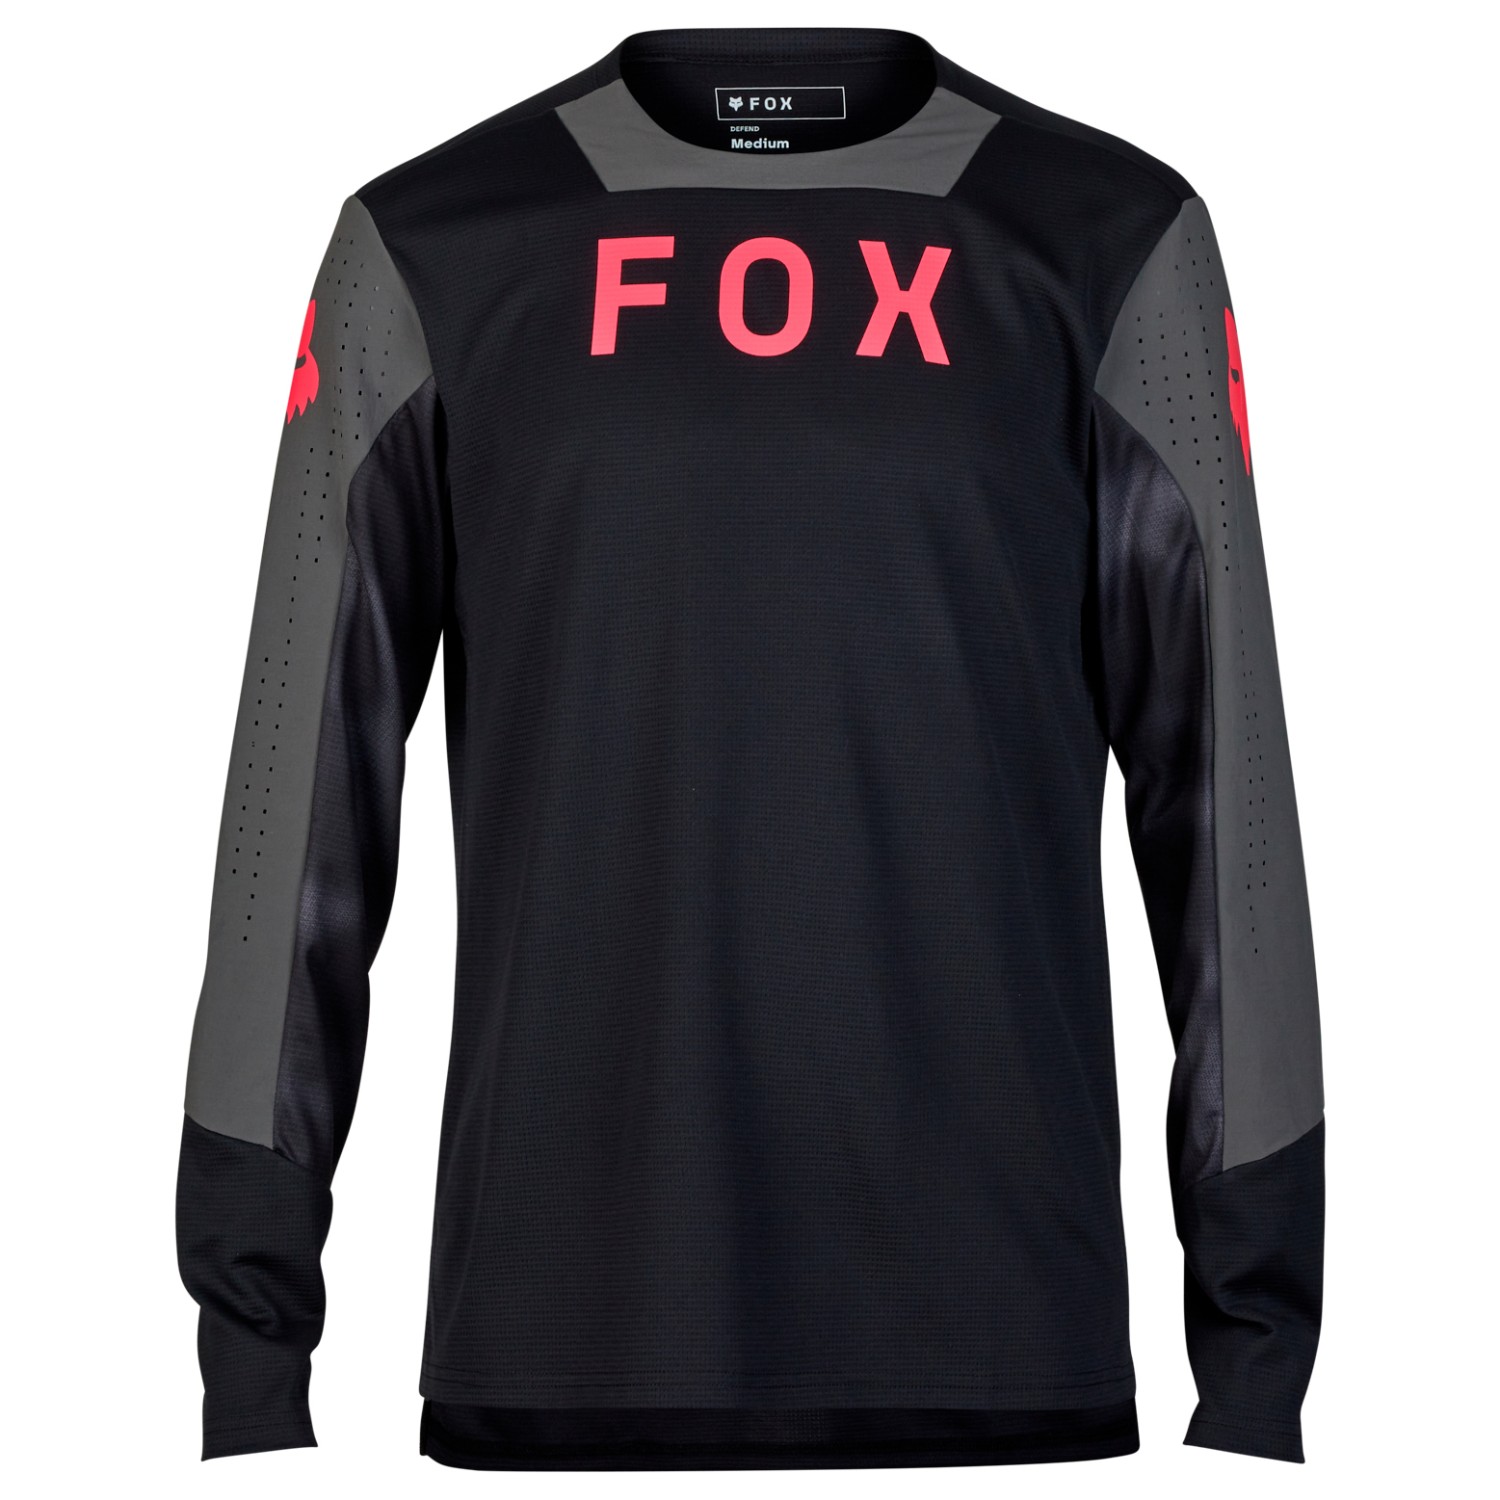 Велосипедный трикотаж Fox Racing Defend L/S Jersey Taunt, черный new f1 racing jersey f1 team crew neck sweater racing jacket